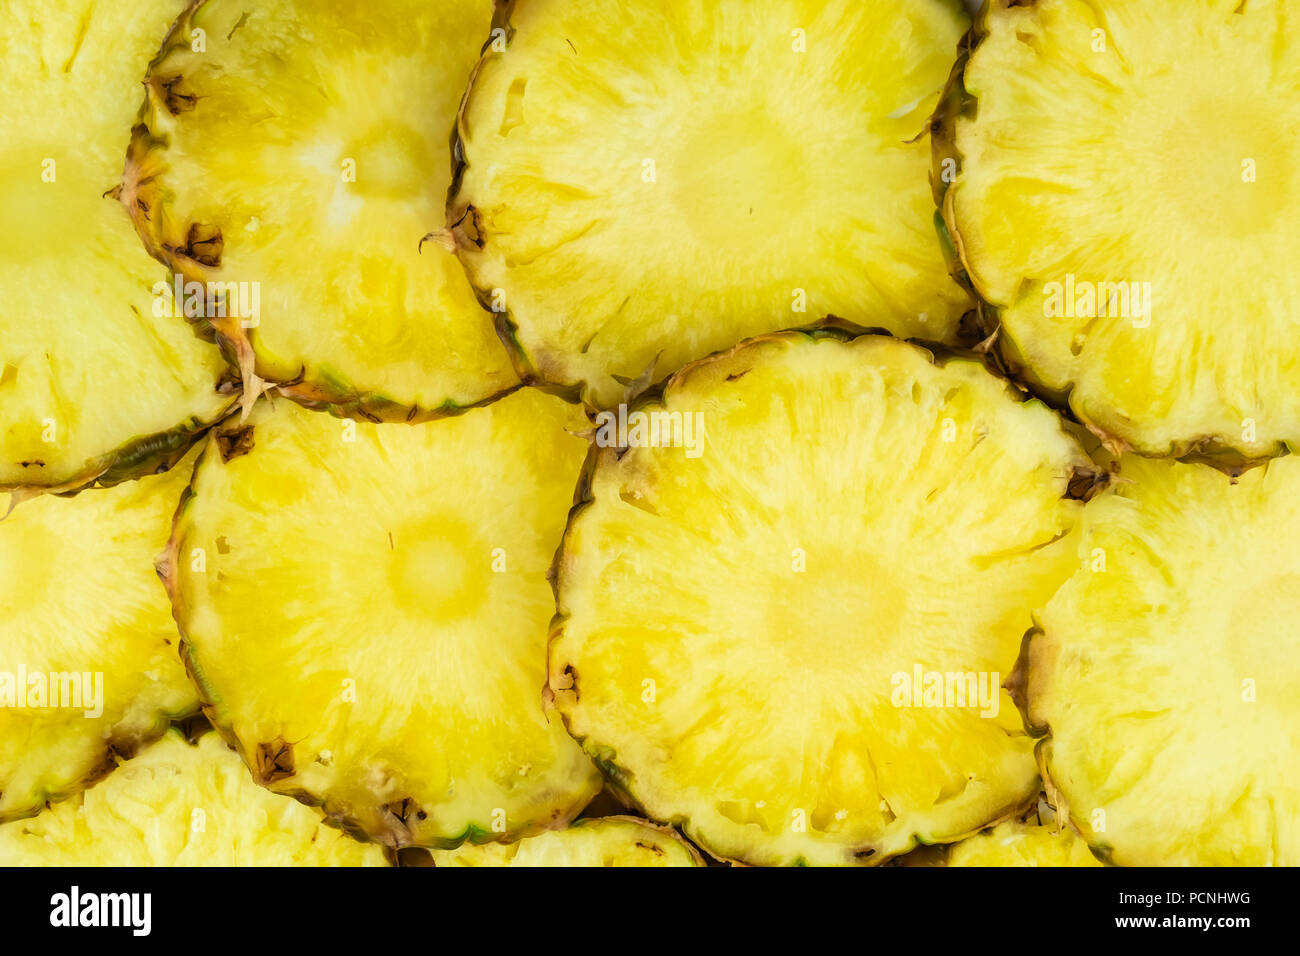 Ananas a fette pezzi giaceva nel pattern, vista dall'alto. Taglio fresco ananas frutta lay strettamente gli uni sugli altri Foto Stock